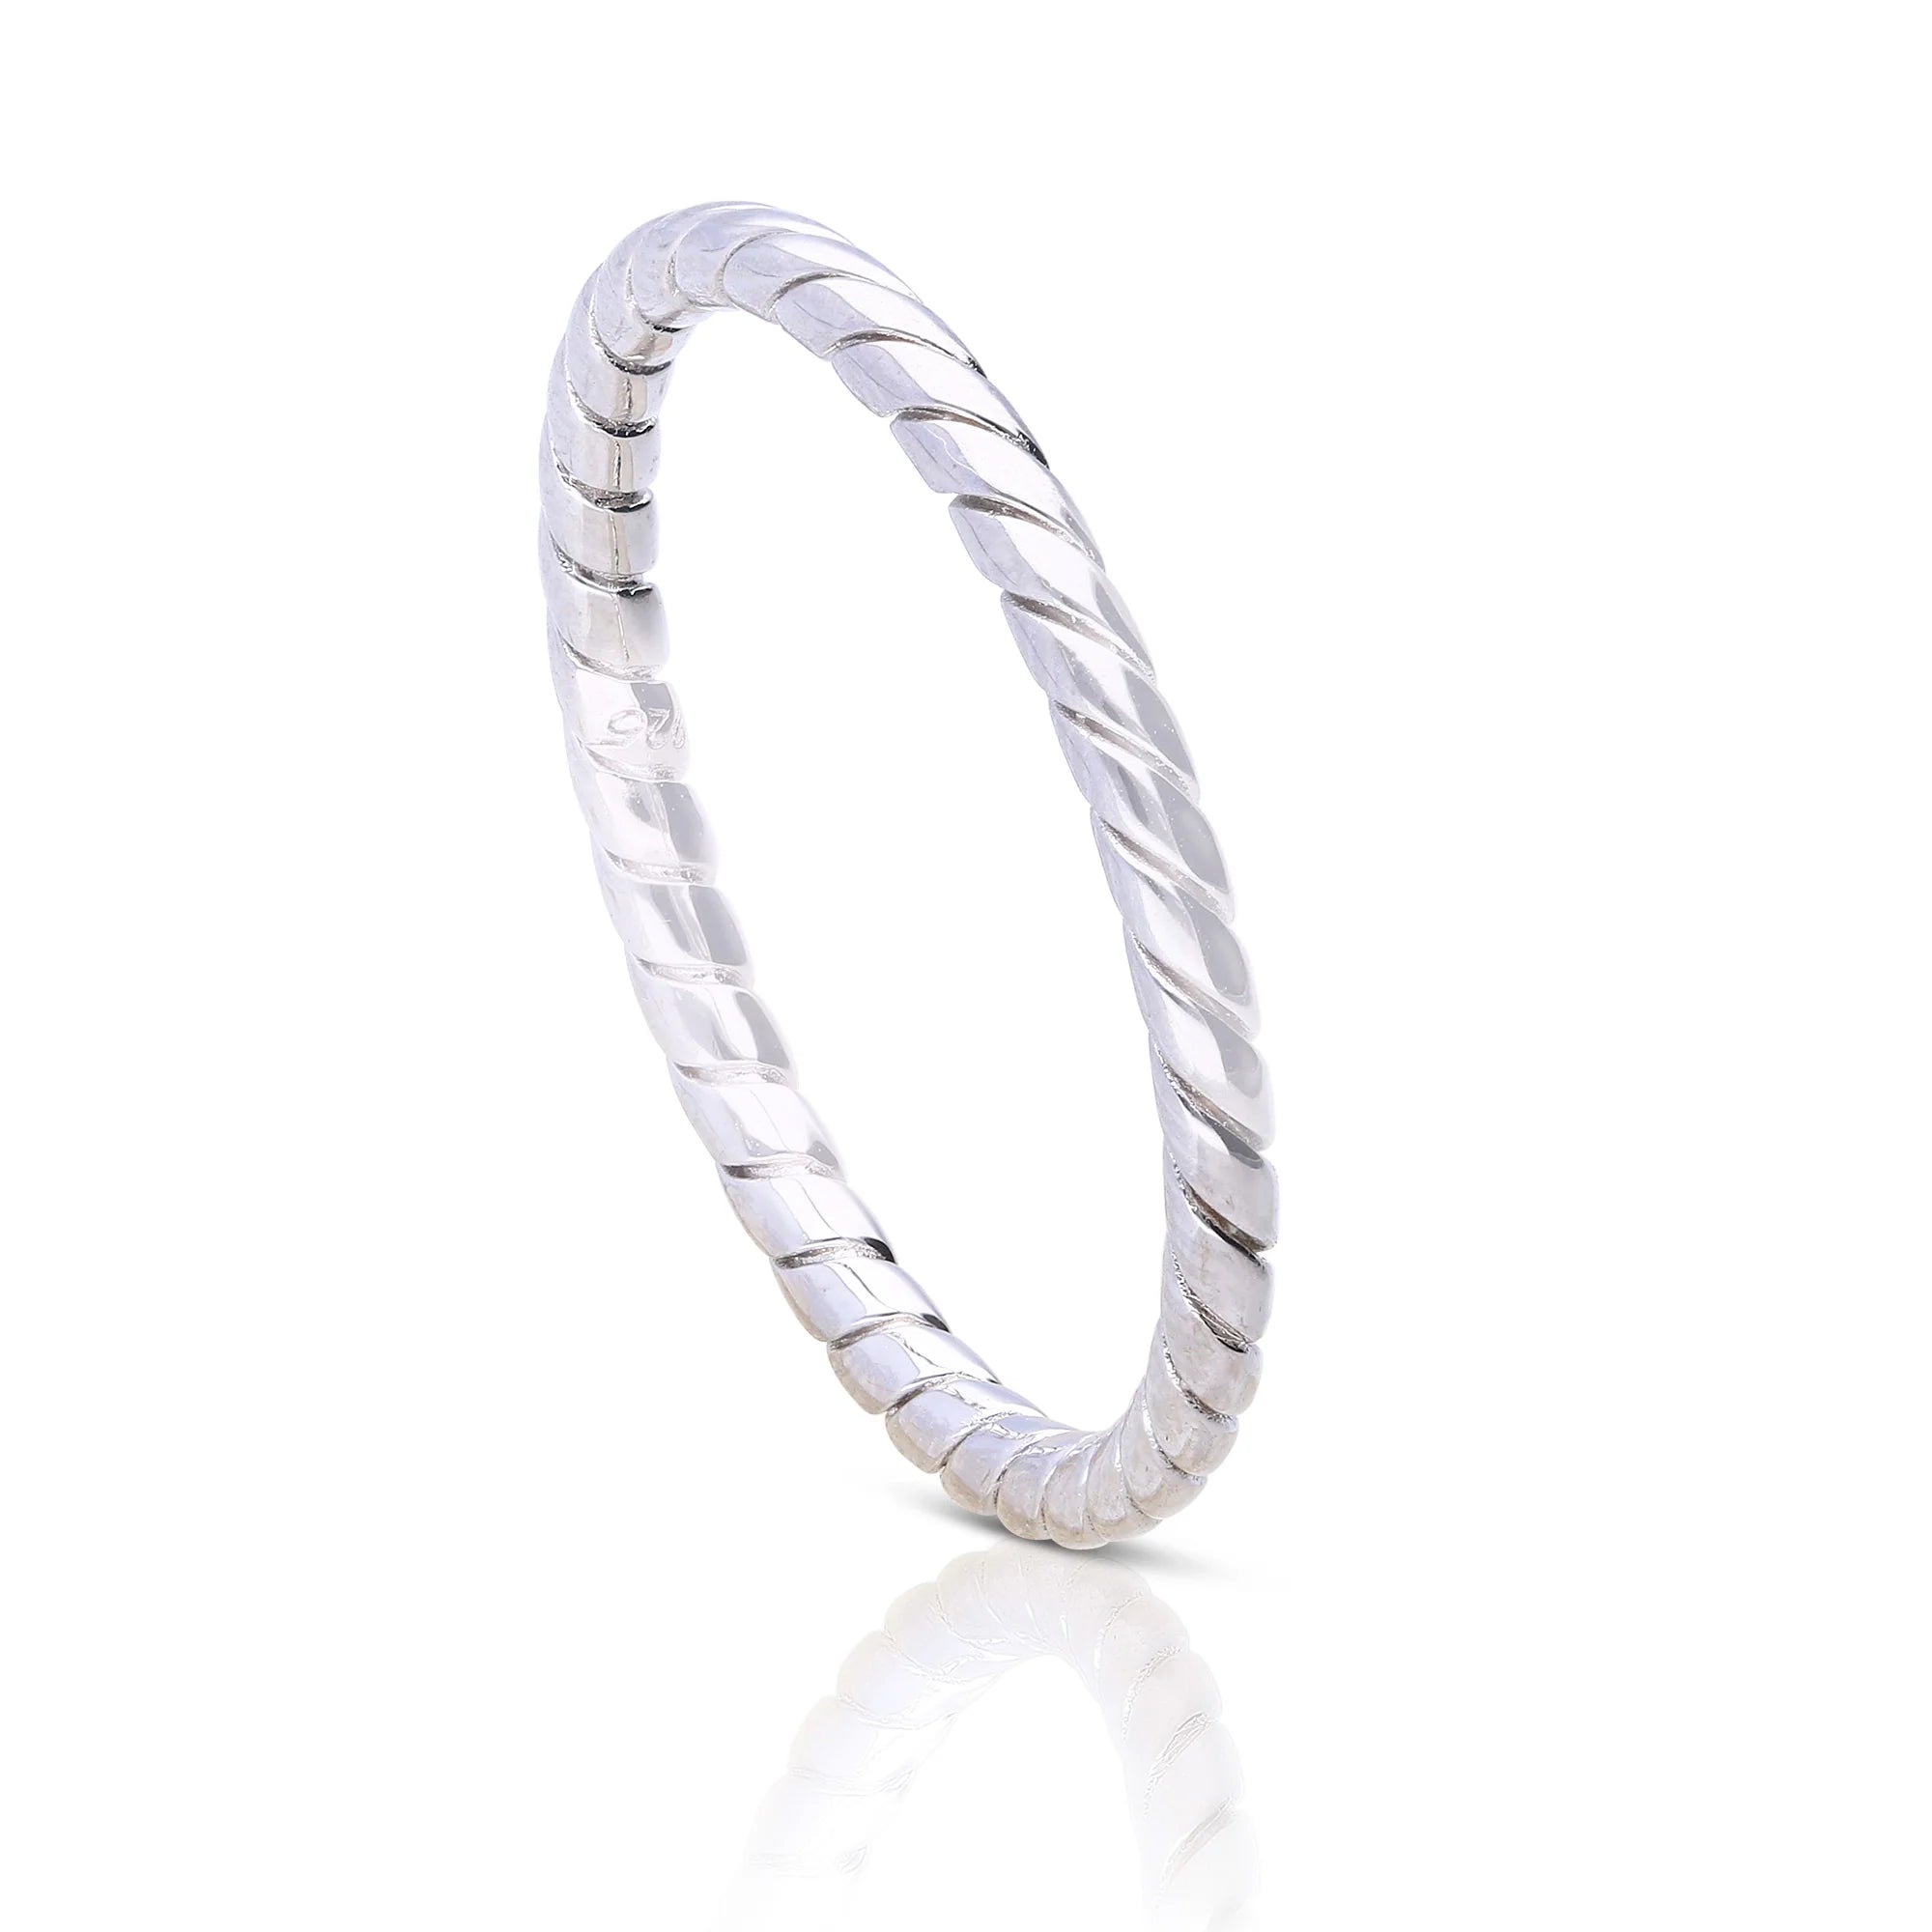 Produktfotografie des gedrehten Rings aus Silber von Diamonfire